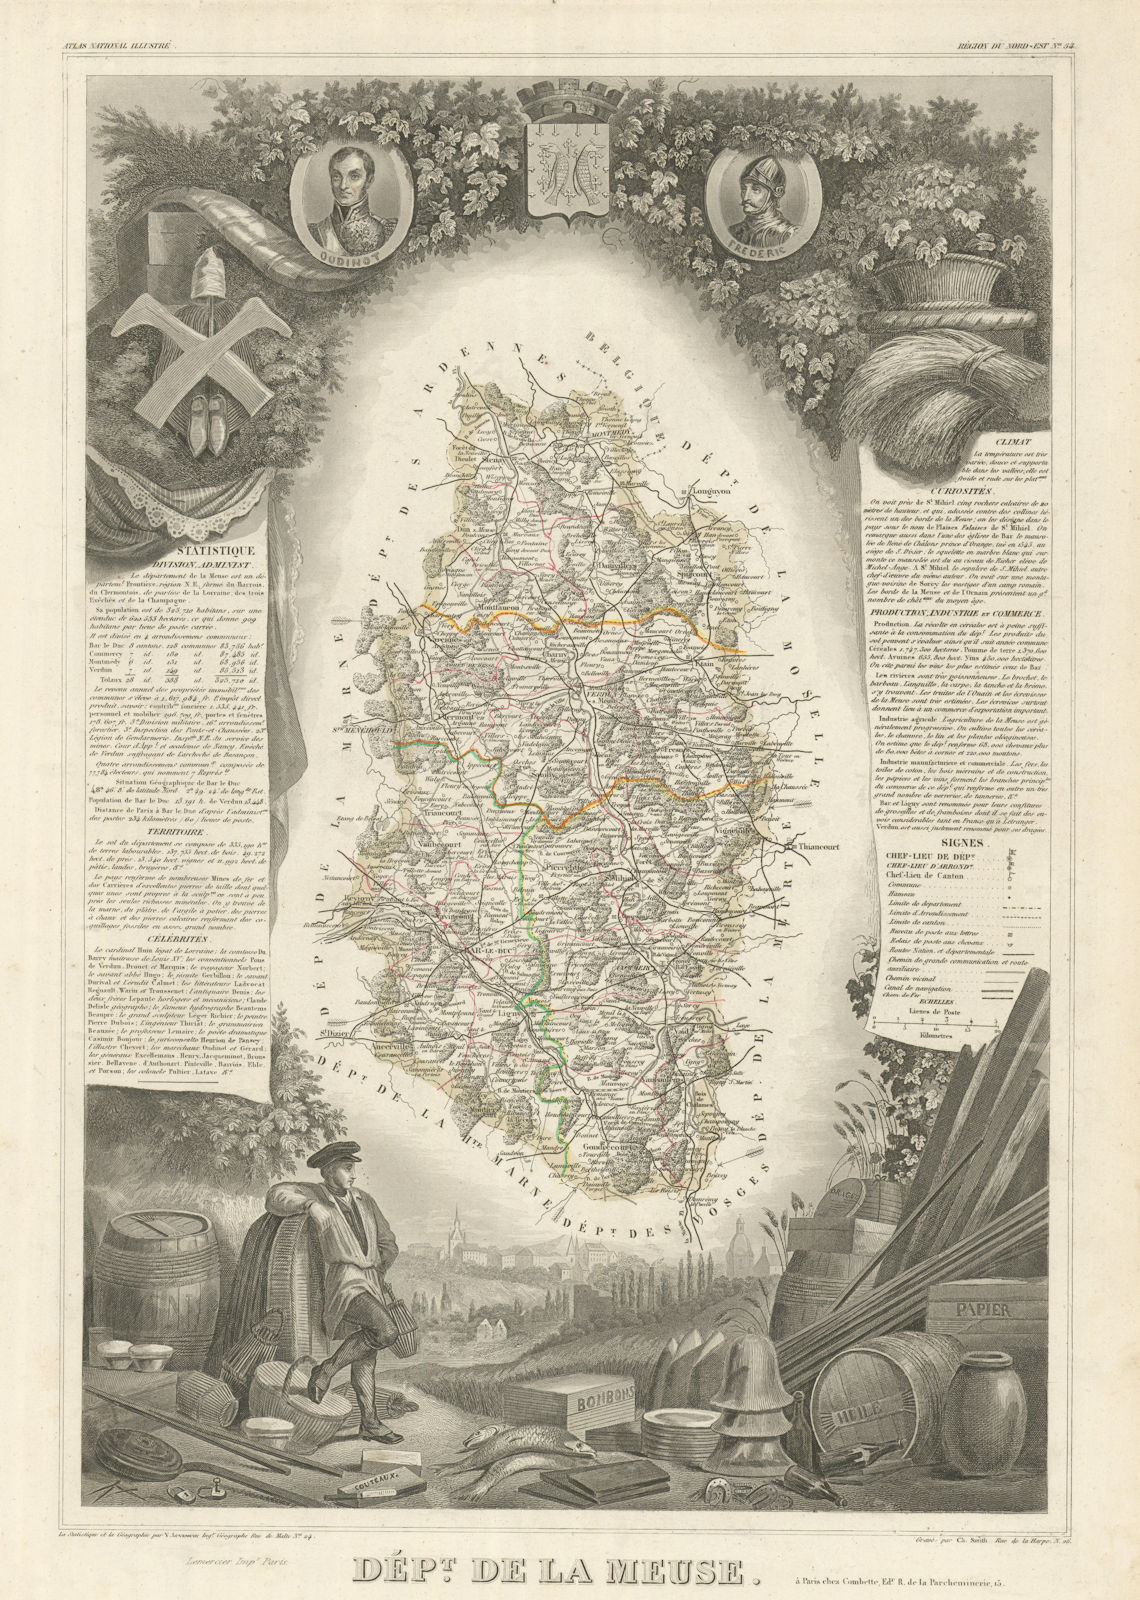 Associate Product Département de la MEUSE. Decorative antique map/carte by Victor LEVASSEUR 1856